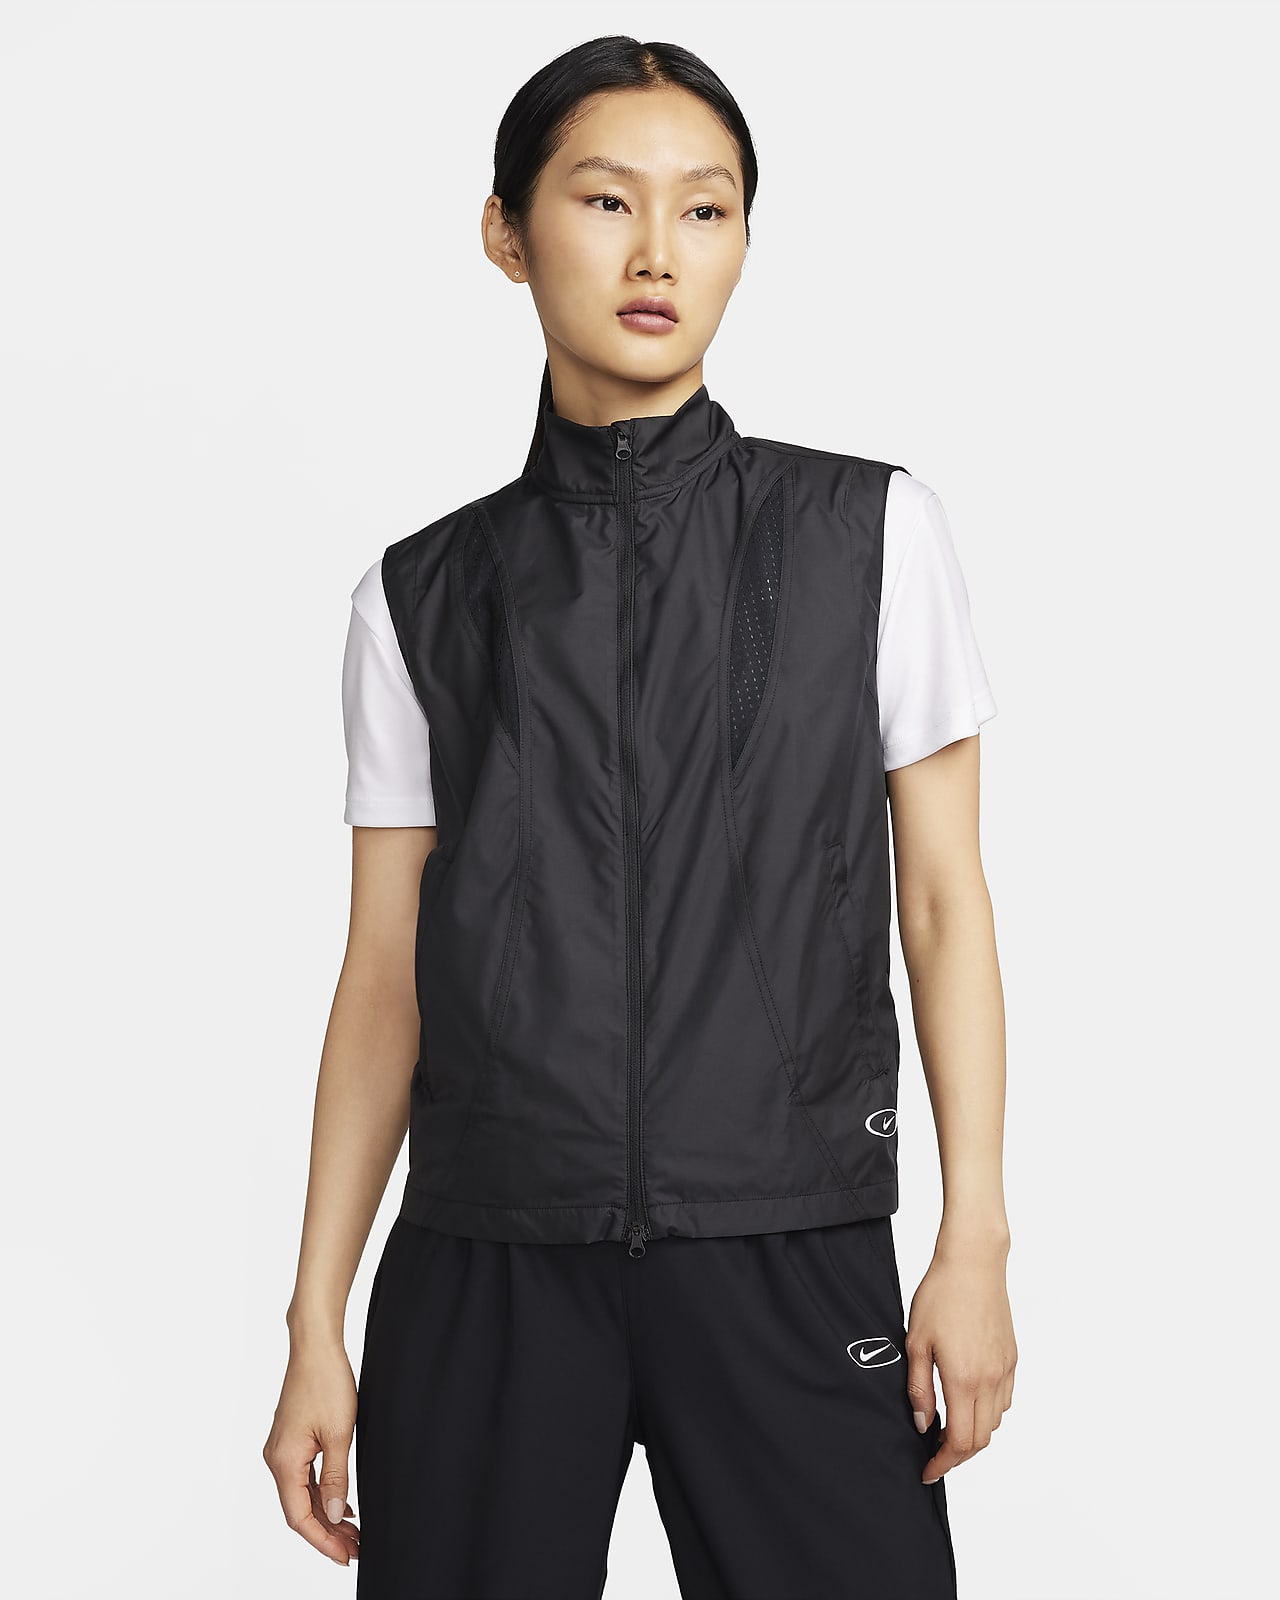 Nike Women's Breathable Running Vest